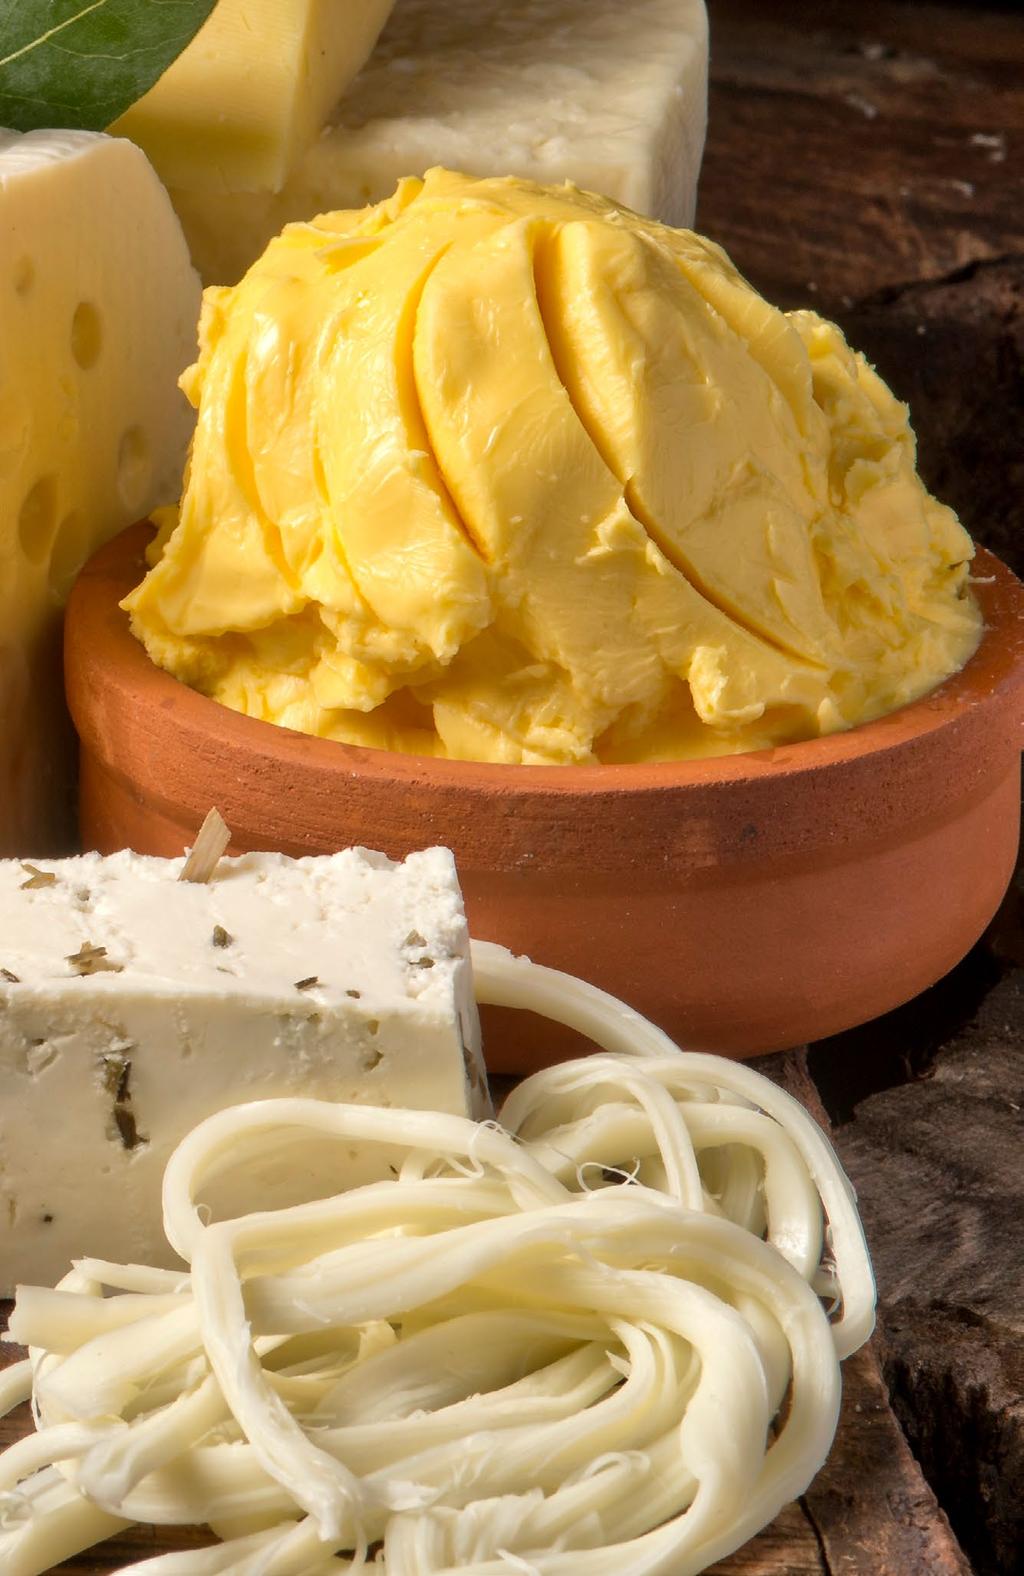 TEREYAĞ BUTTER Tereyağ Butter 15 kg 1 kg